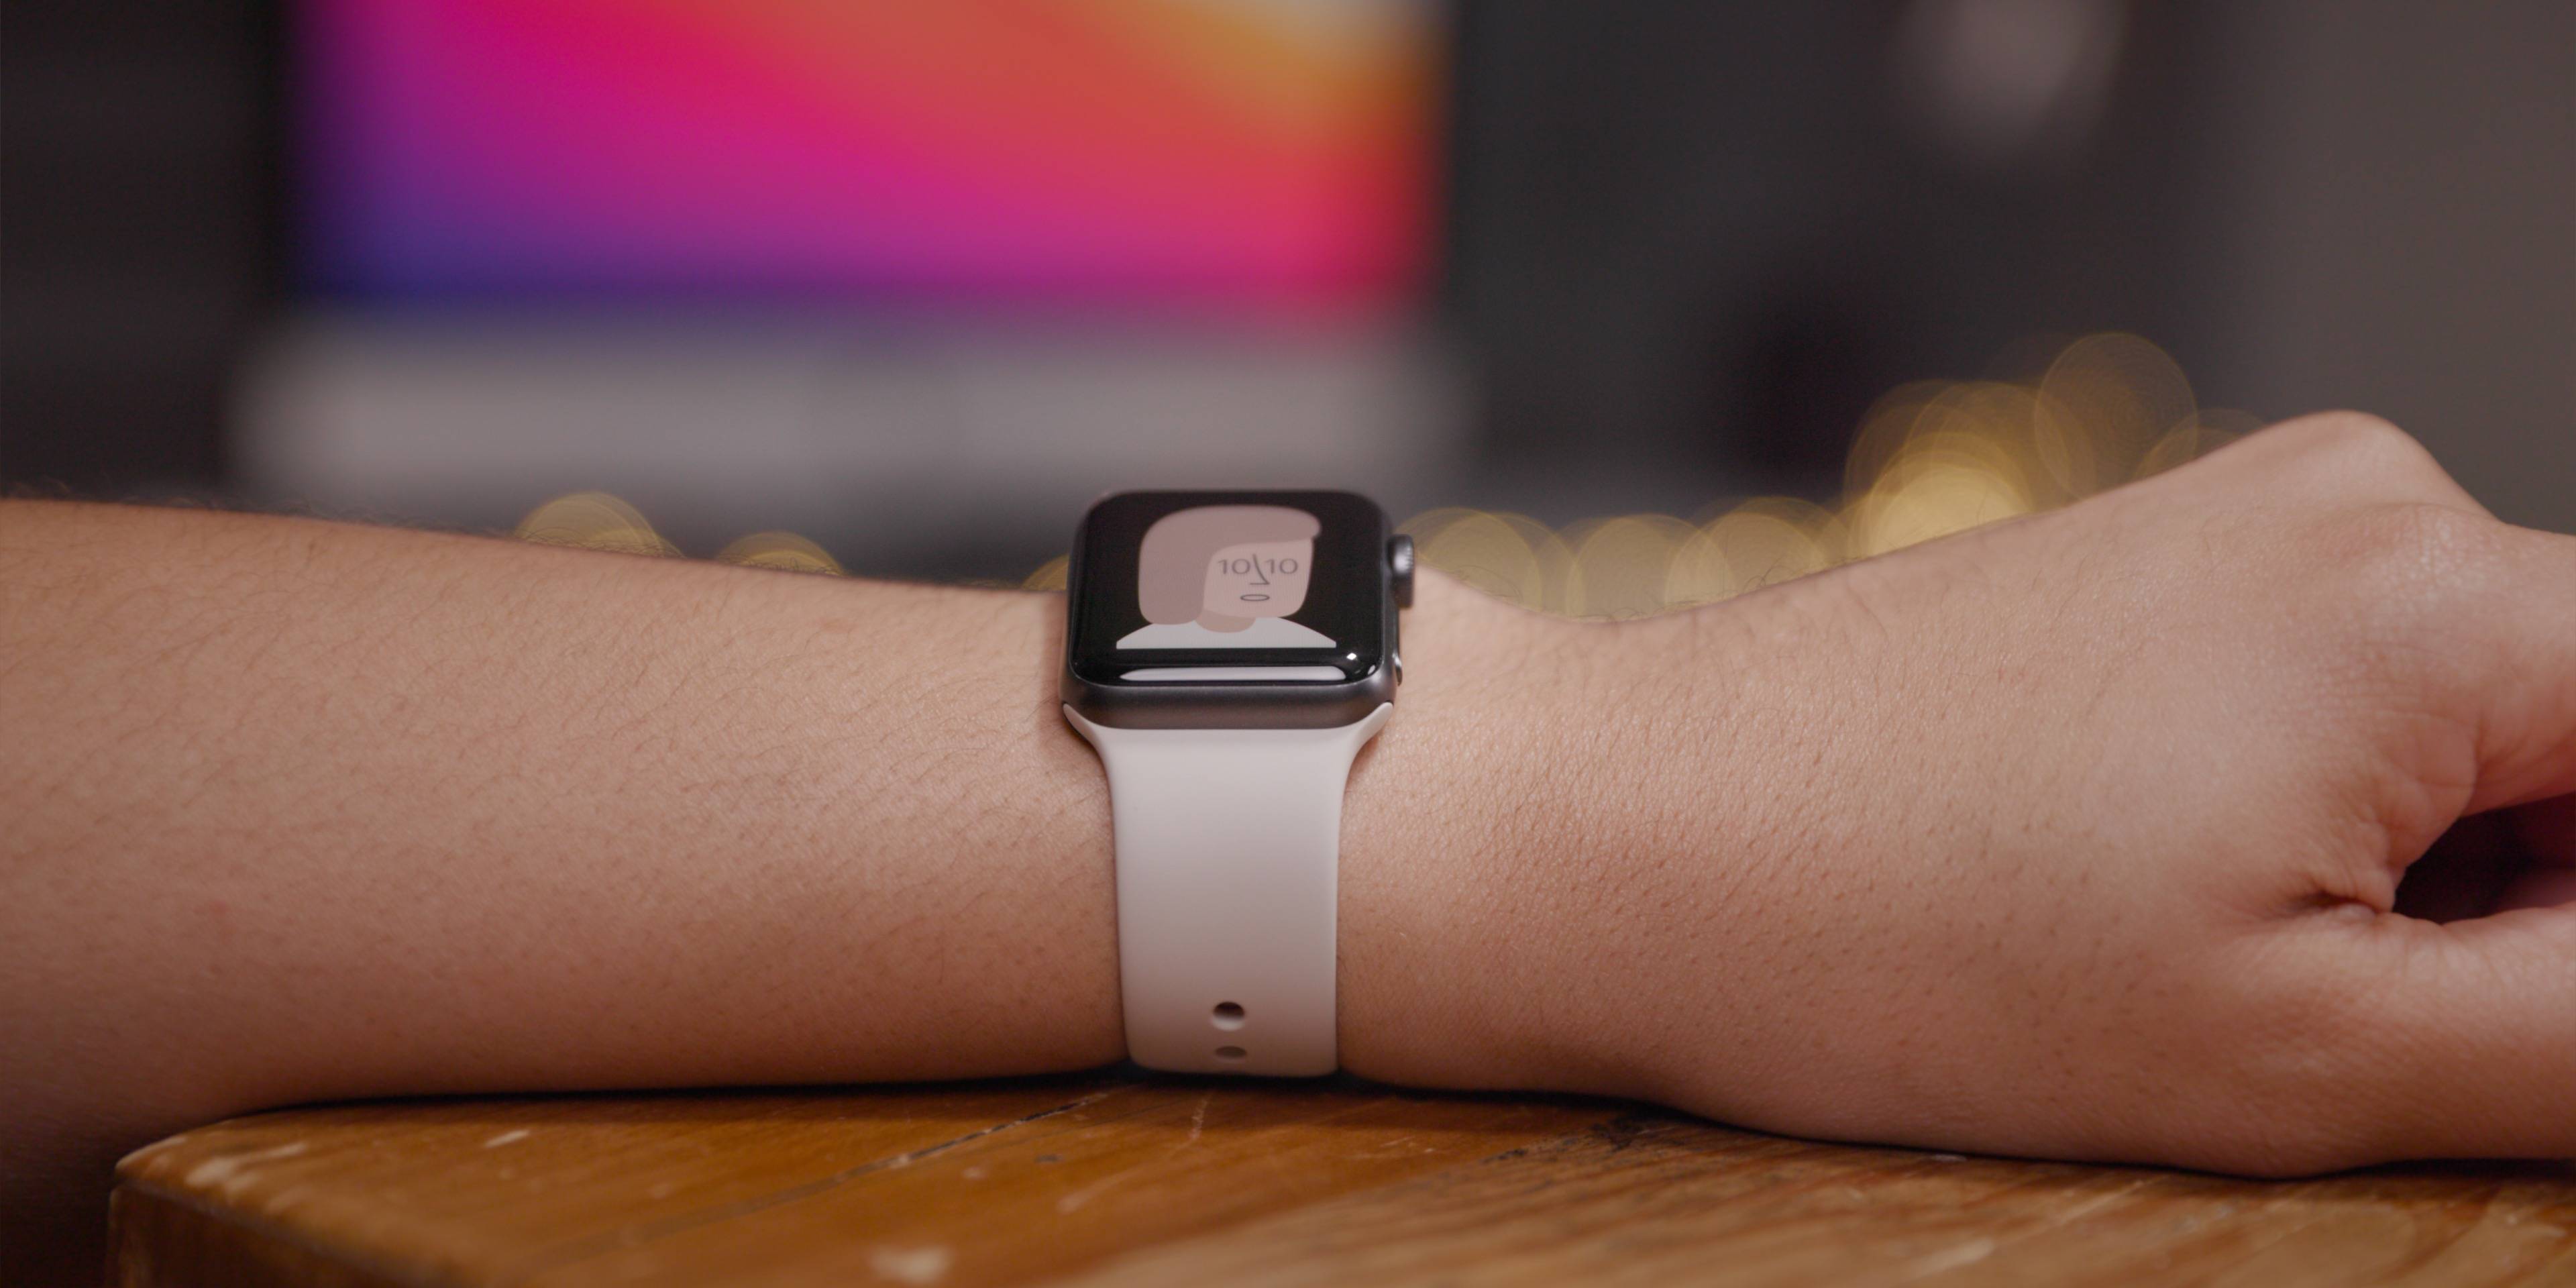 Обзор и характеристики apple watch 2: фотографии, дизайн, сколько стоит